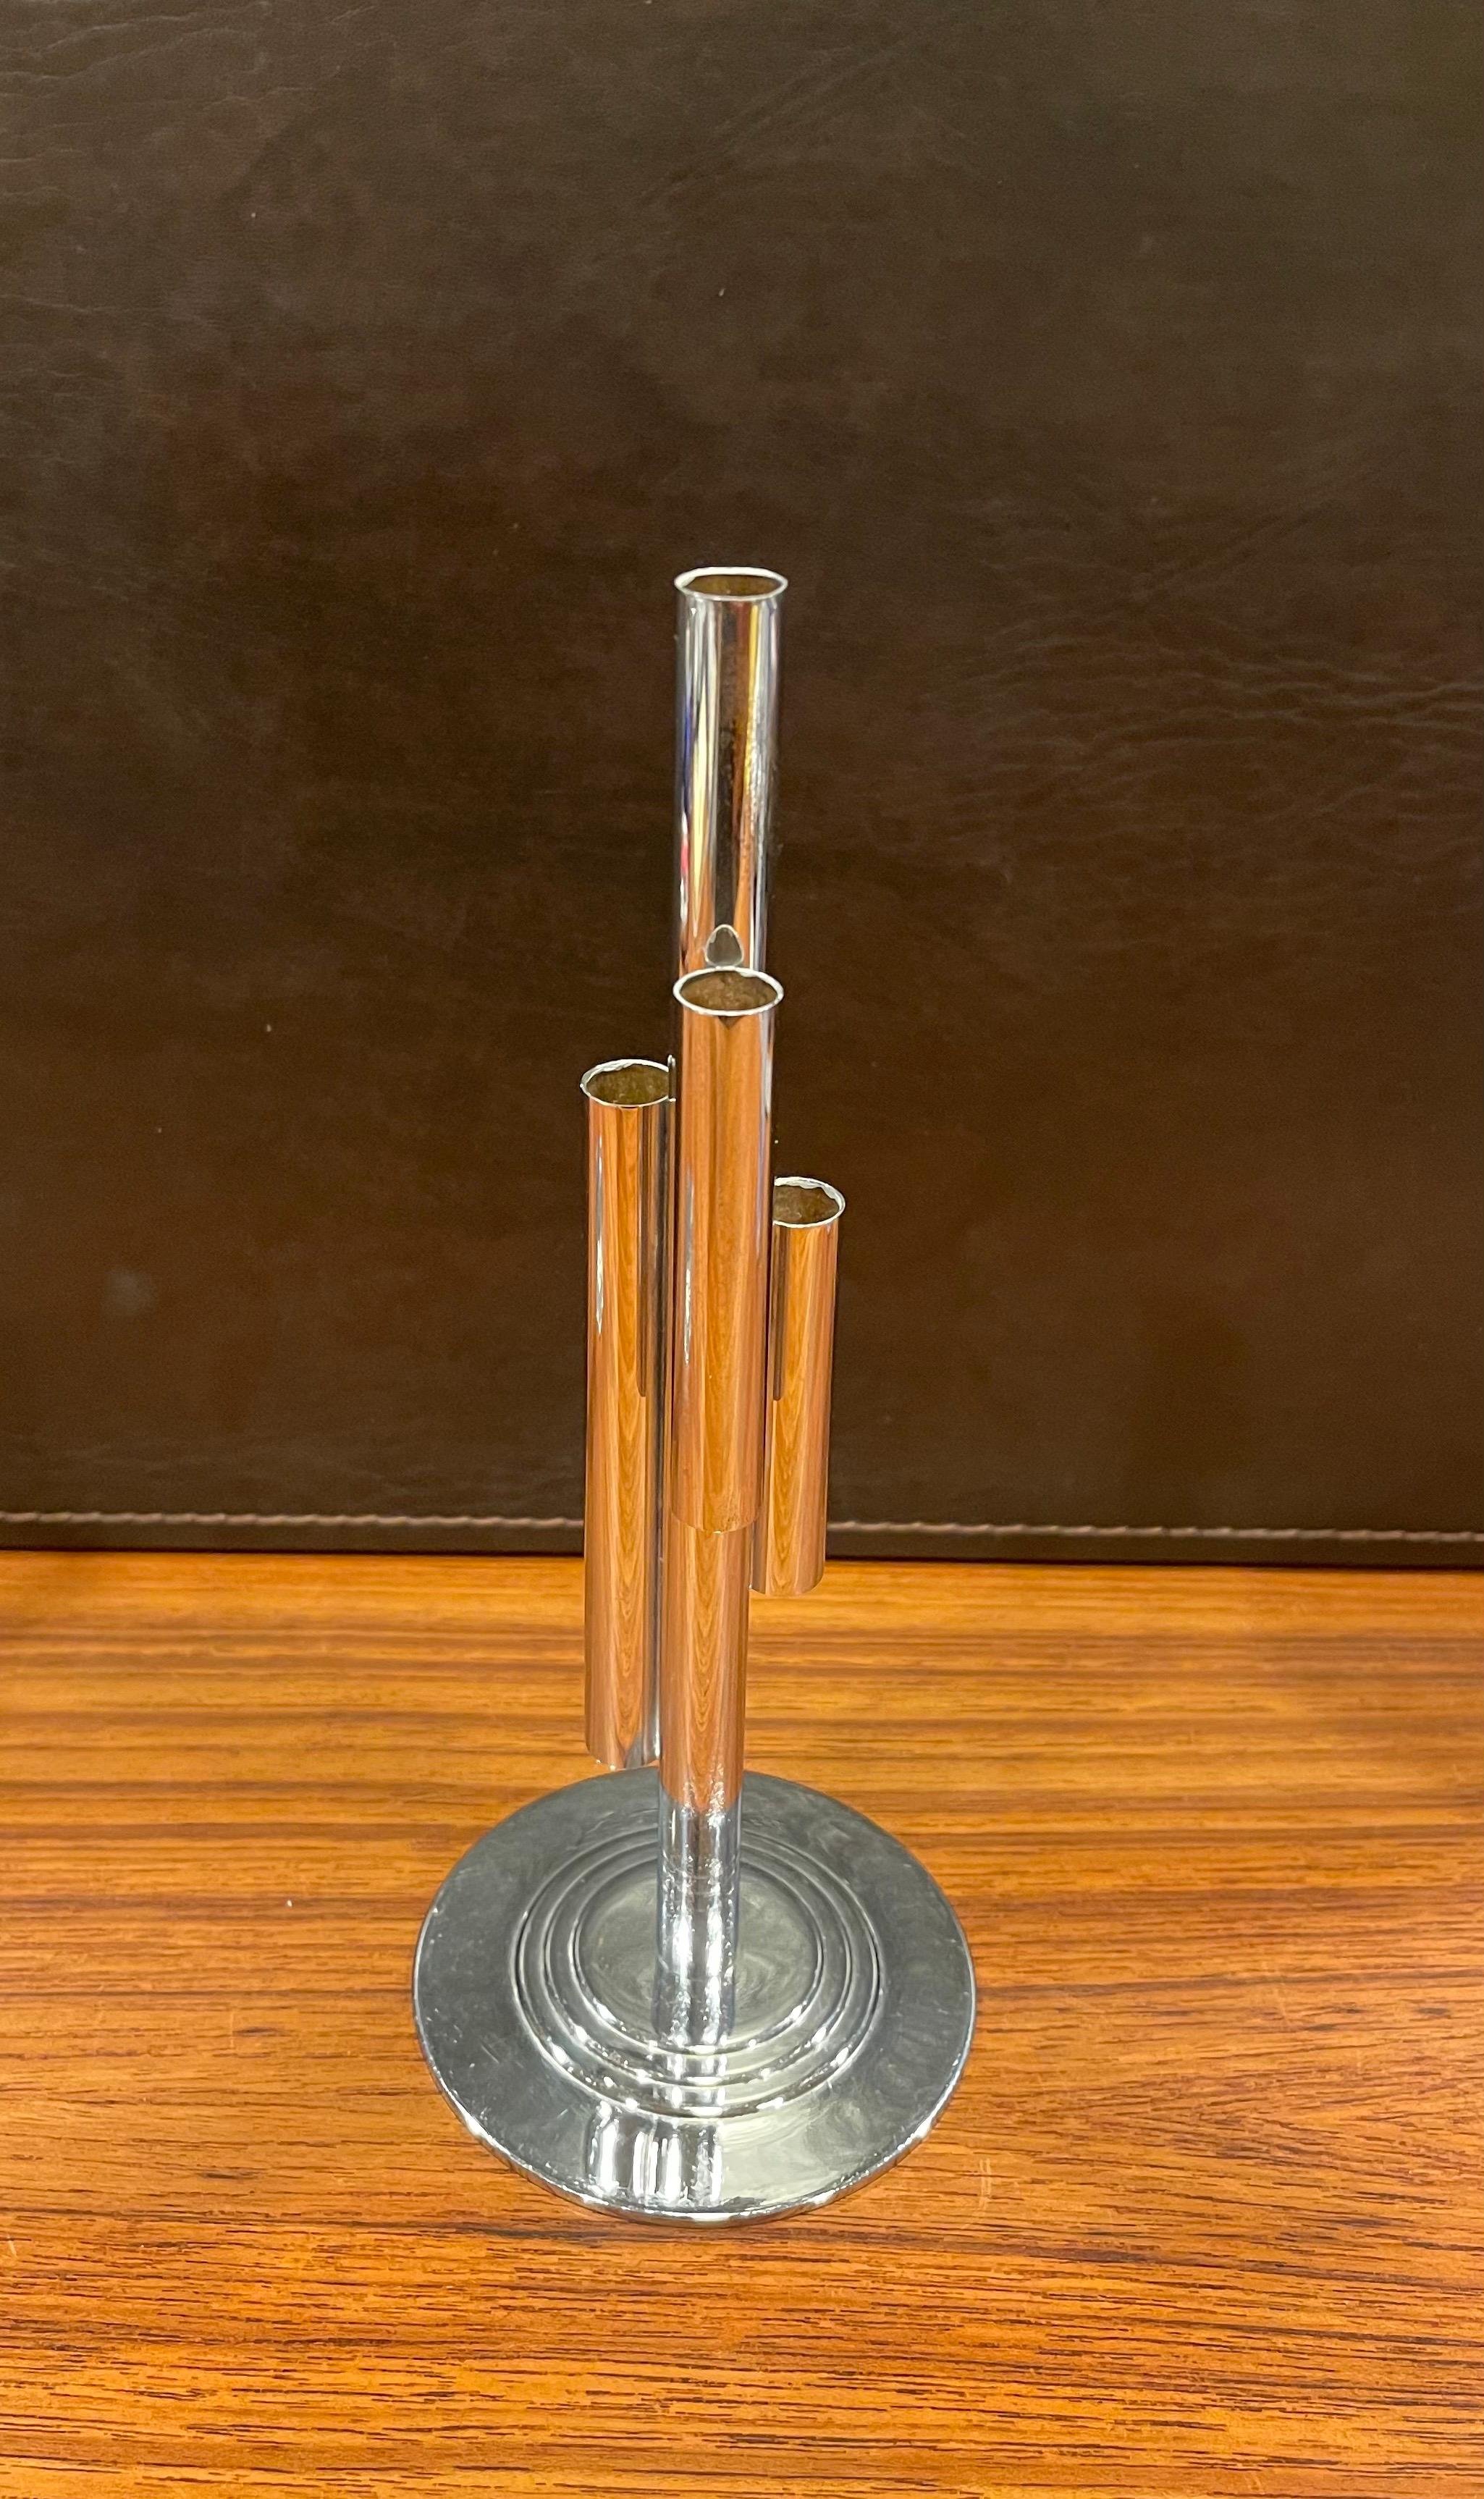 Merveilleux vase tubulaire chromé Art Déco par Ruth & William Gerth pour Chase & Co, vers 1930. Le design présente un tube central chromé auquel sont fixés trois tubes de longueurs et de hauteurs différentes, montés sur une base circulaire à quatre